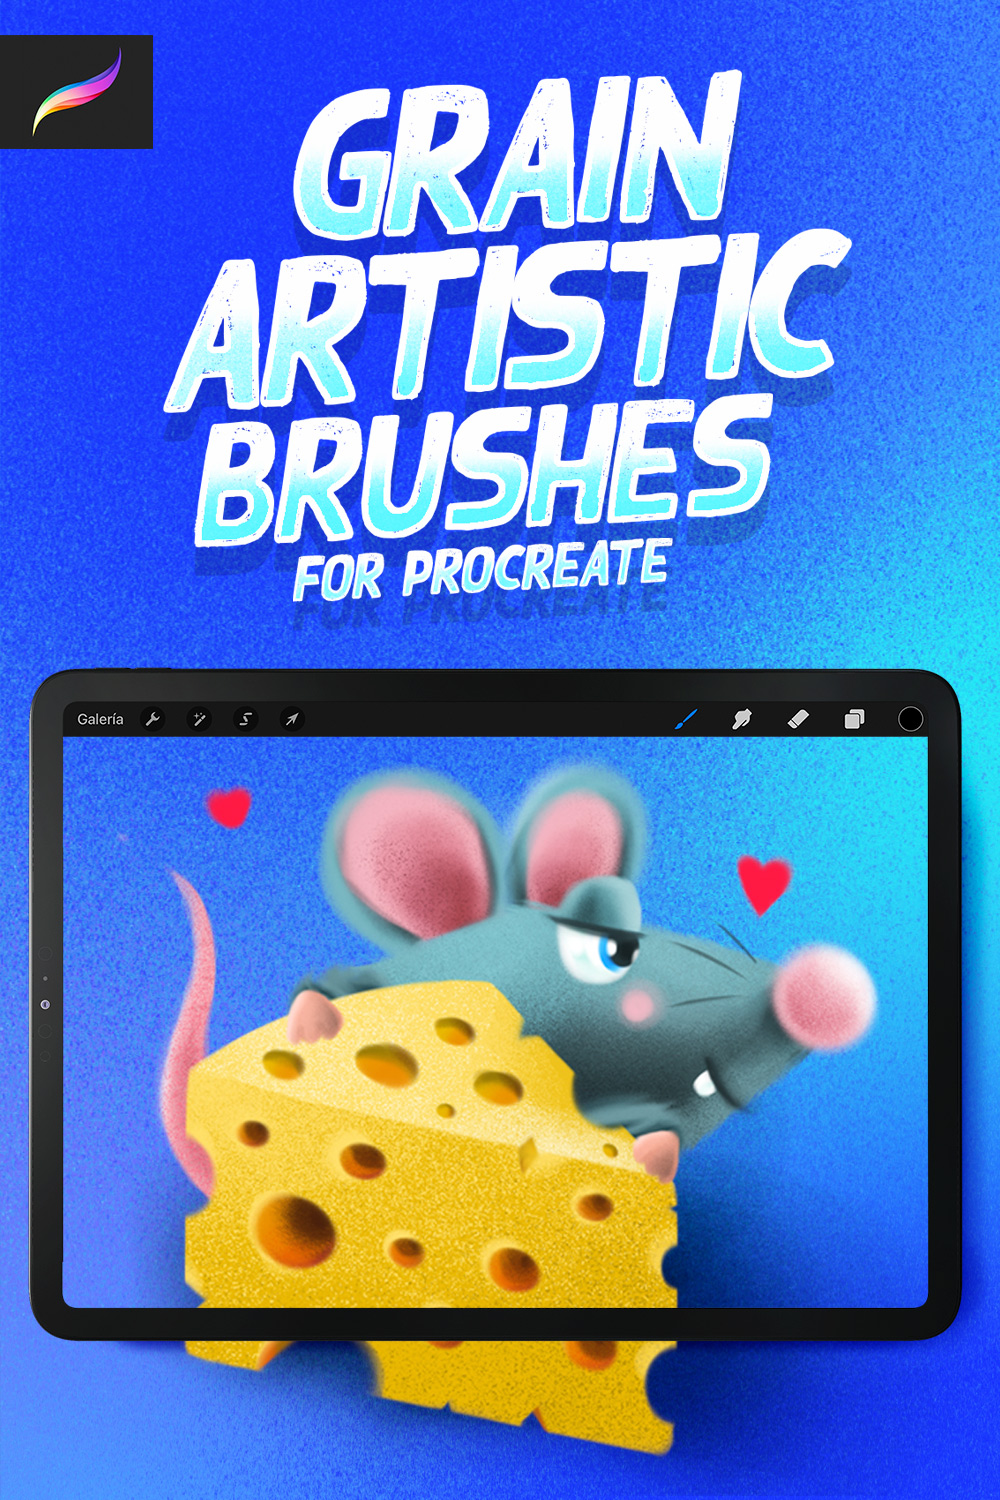 Grain Artistic Brushes for Procreate Pinterest image.